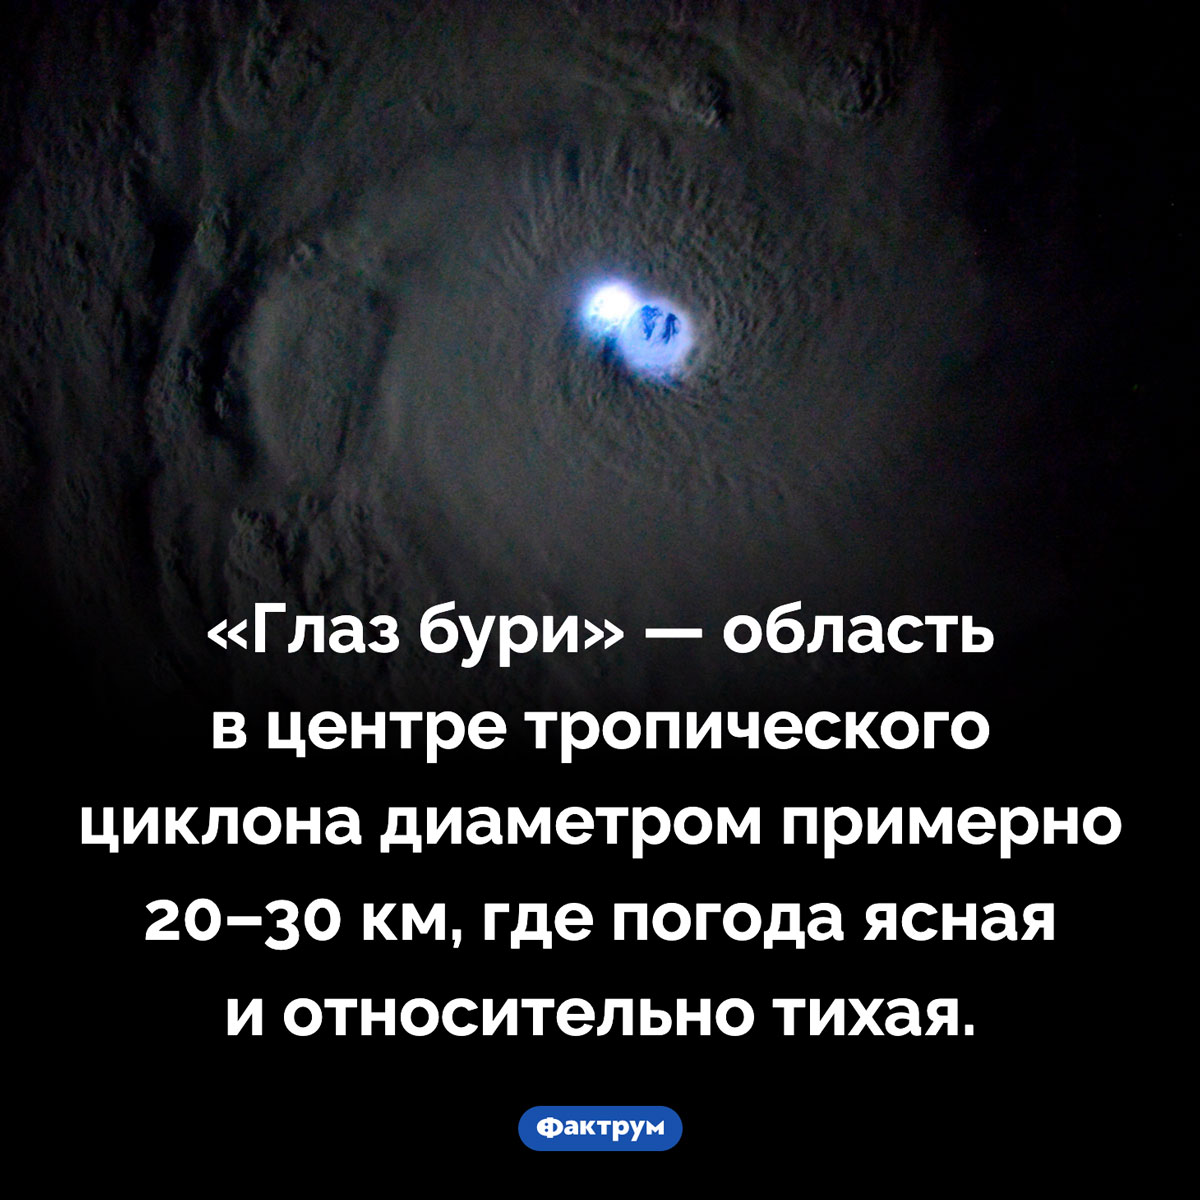 Глаз бури. «Глаз бури» — область в центре тропического циклона диаметром примерно 20–30 км, где погода ясная и относительно тихая.